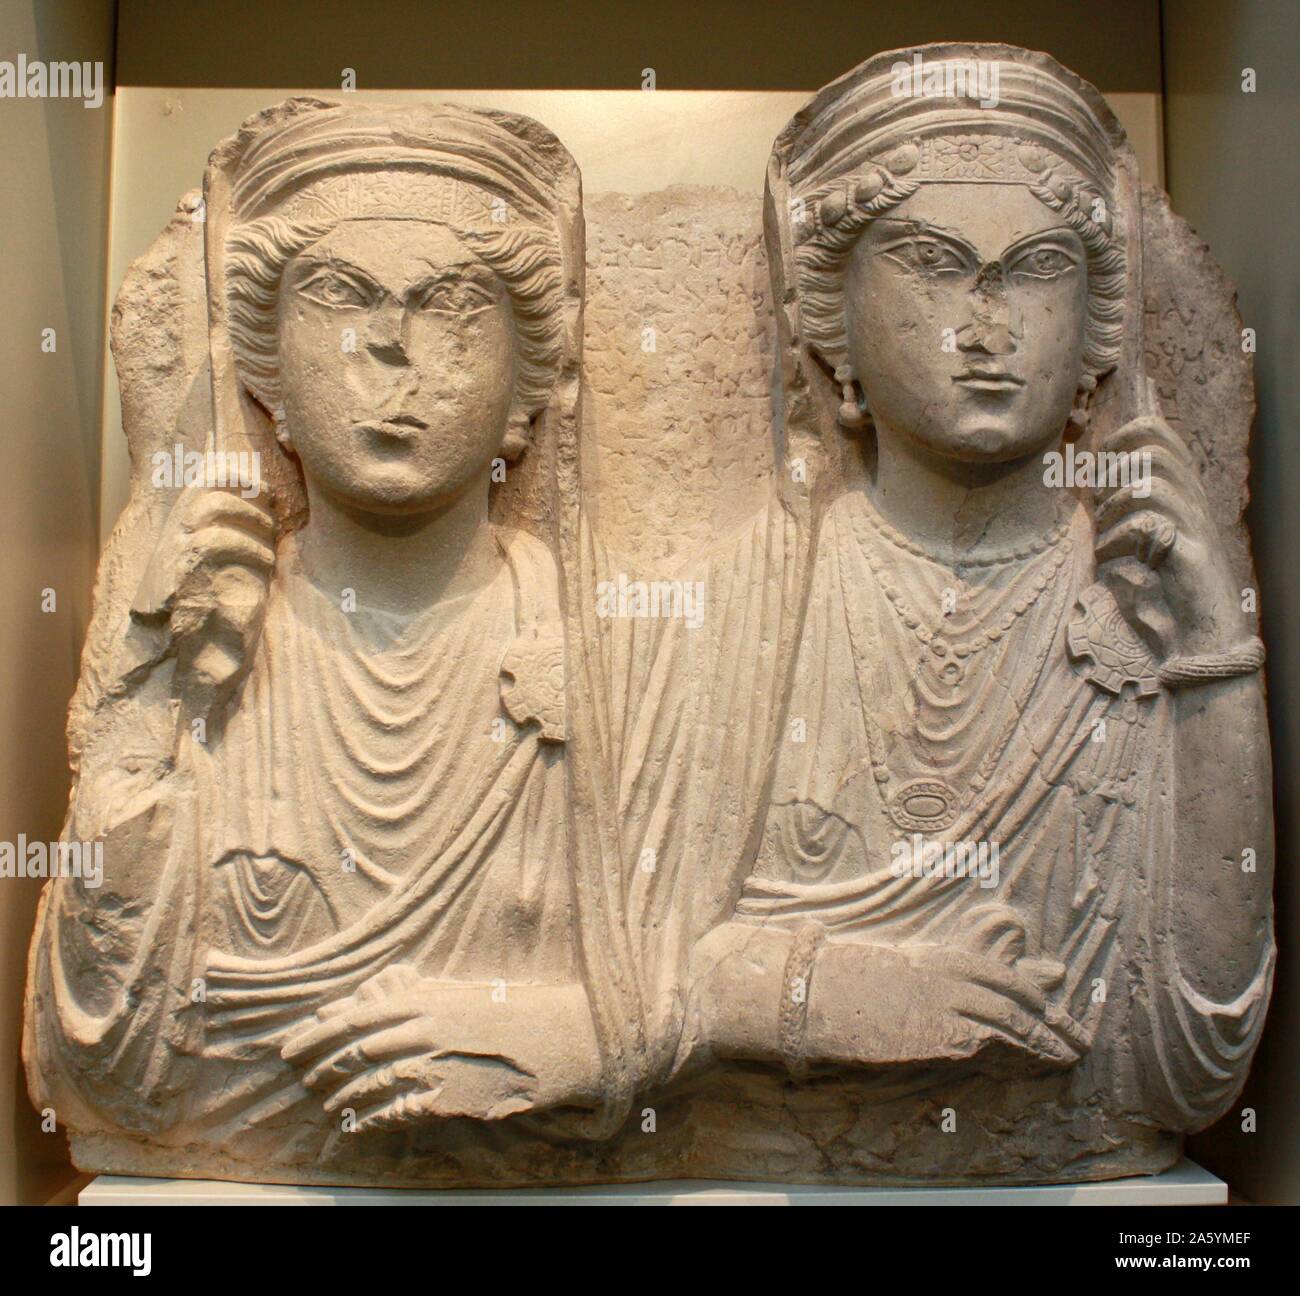 Diese steinernen Gesichter, die Römischen Syrer, der zwischen über AD 50-270 lebte, stammen aus Gräbern außerhalb der Stadt Palmyra. Ihre Mode sind Syrische, aber Sie sind in realistischen römischen Stil gezeigt. Es gibt drei Arten von Gräbern, alle für wohlhabende Bürger gebaut: einstöckige Haus Gräber, Türme aus mehreren Stockwerken und u-rock-gehauenen Gräbern. Stockfoto